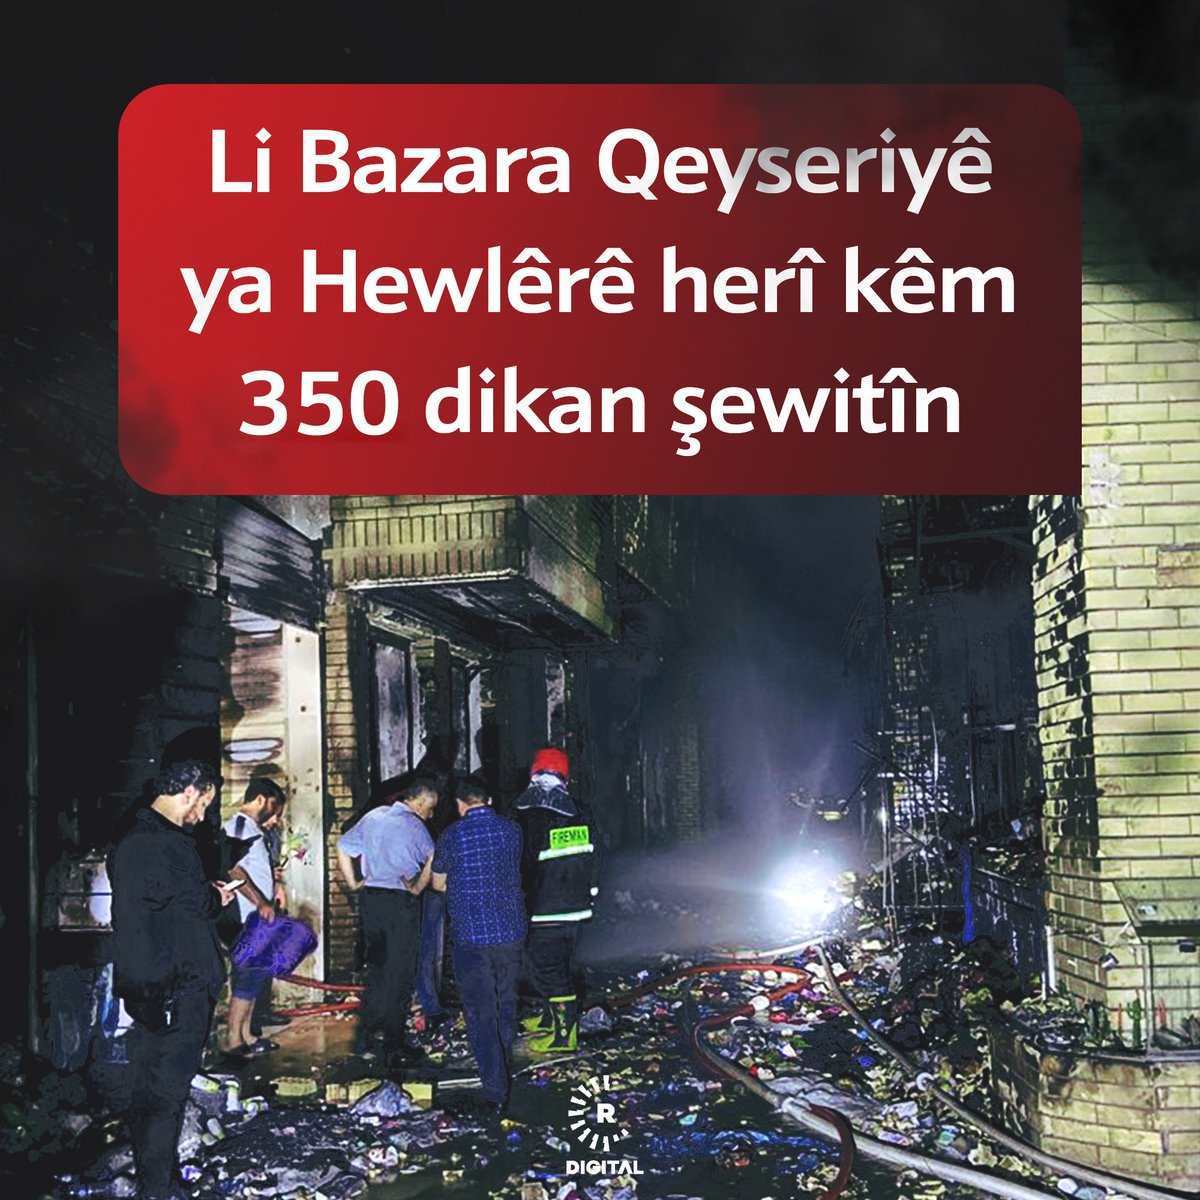 Li gorî agahiyên Rûdawê, li Bazara Qeyseriyê ya #Hewlêr'ê herî kêm 350 dikan şewitîne